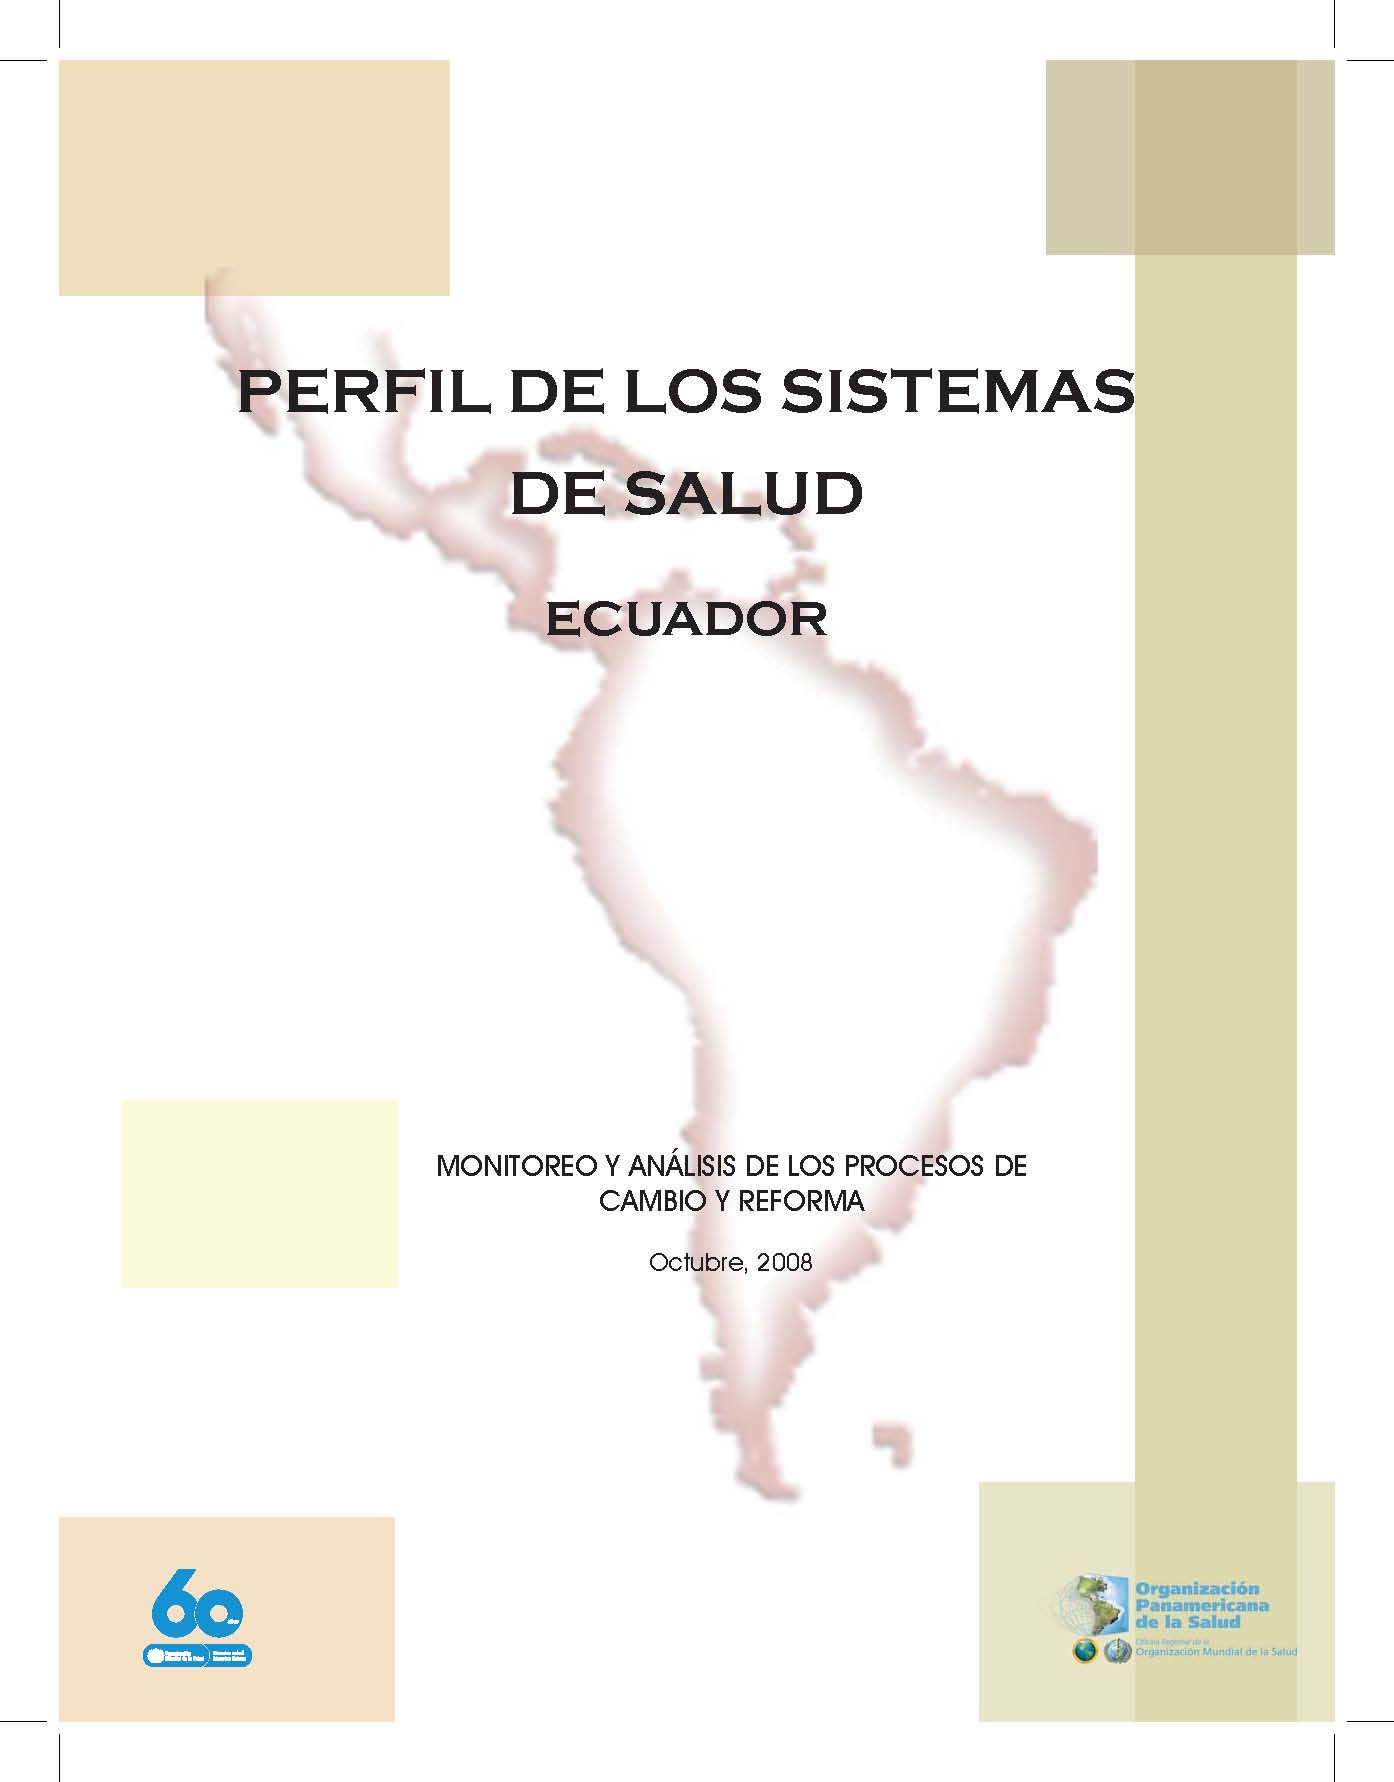 Perfil de los sistemas de salud Ecuador: monitoreo y análisis de los procesos de cambio y reforma<br/>Washington DC, Estados Unidos: OPS : OMS. 2008. 44 páginas 